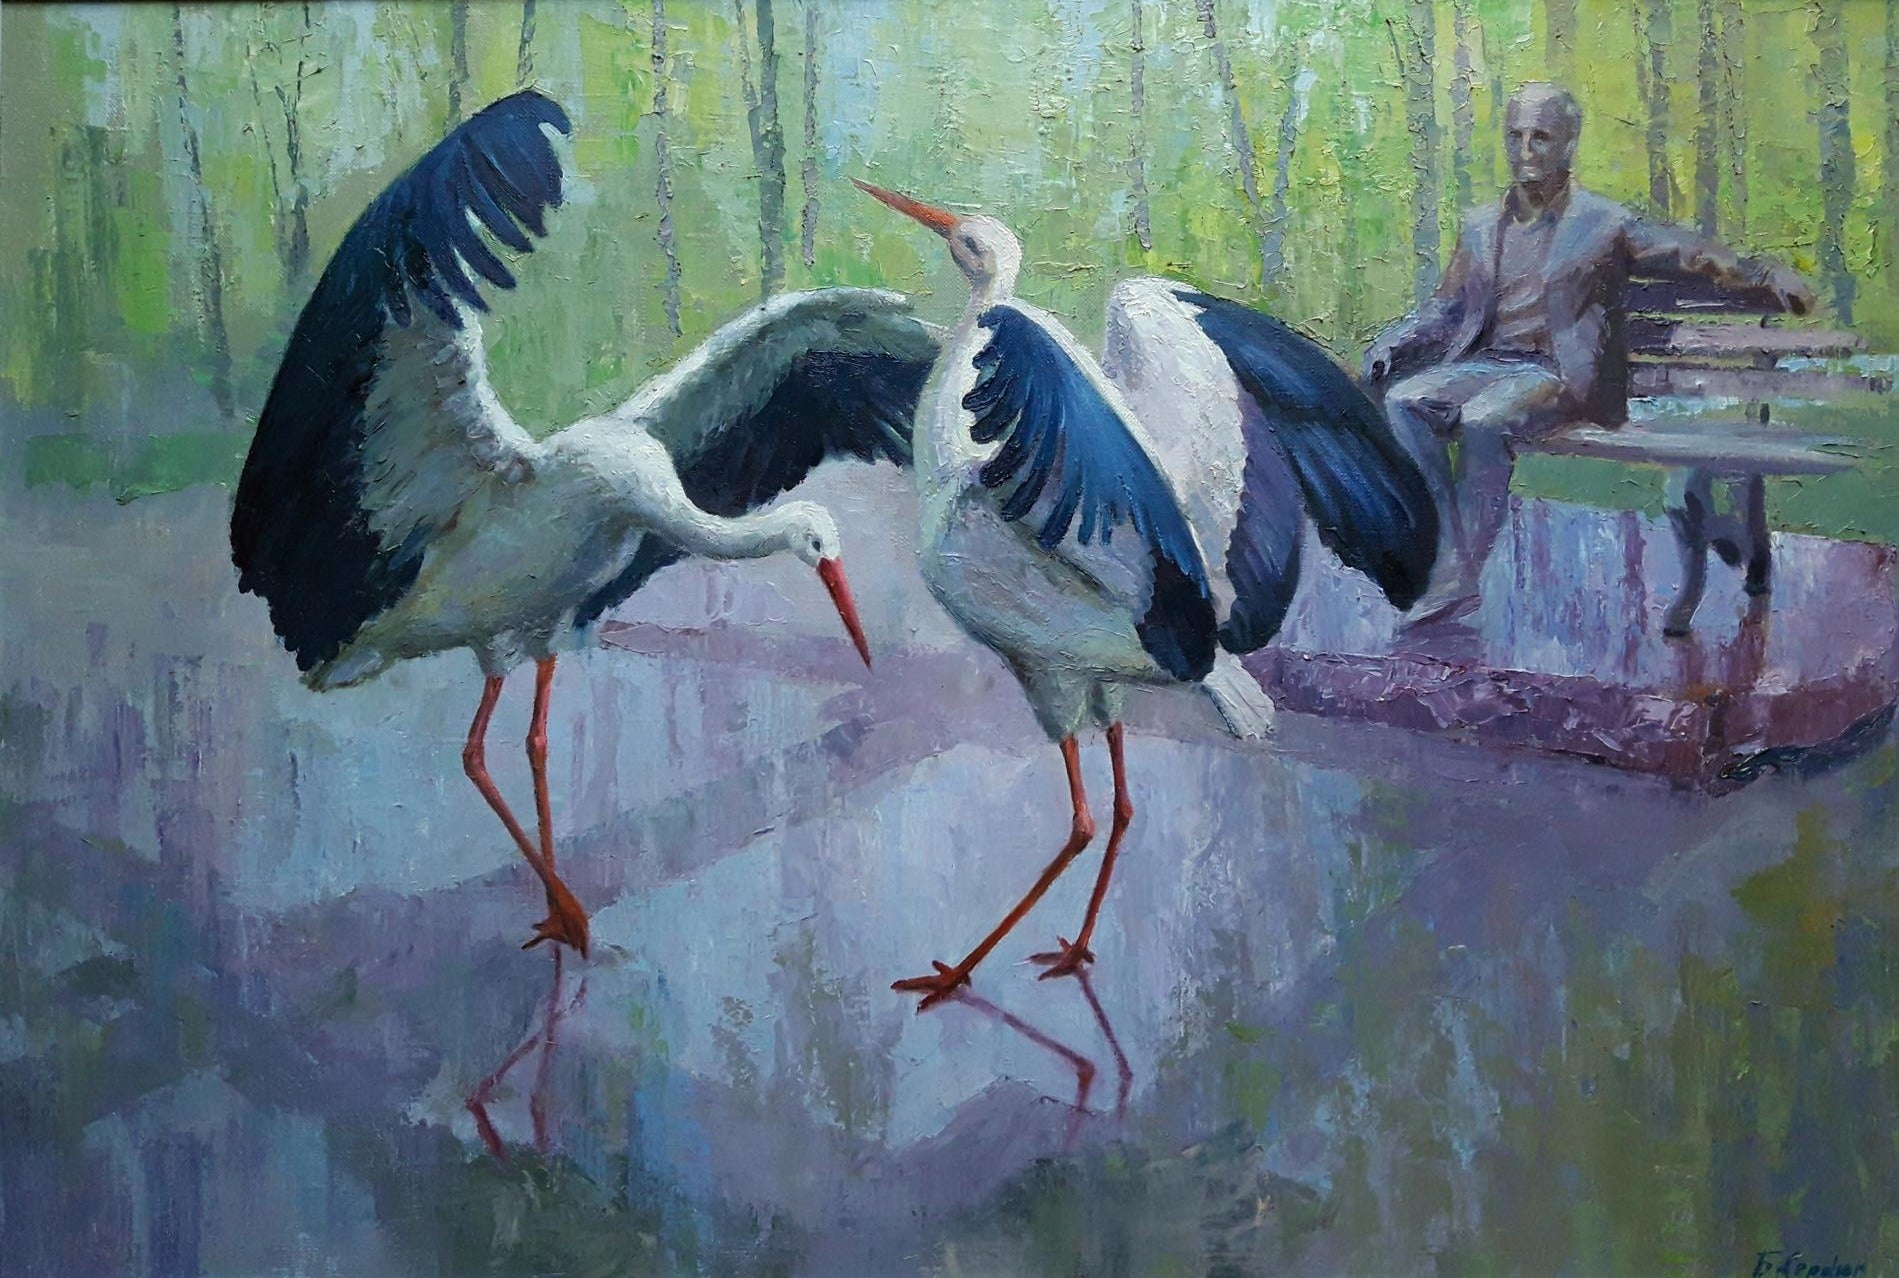 Oil painting In the city park Serdyuk Boris Petrovich